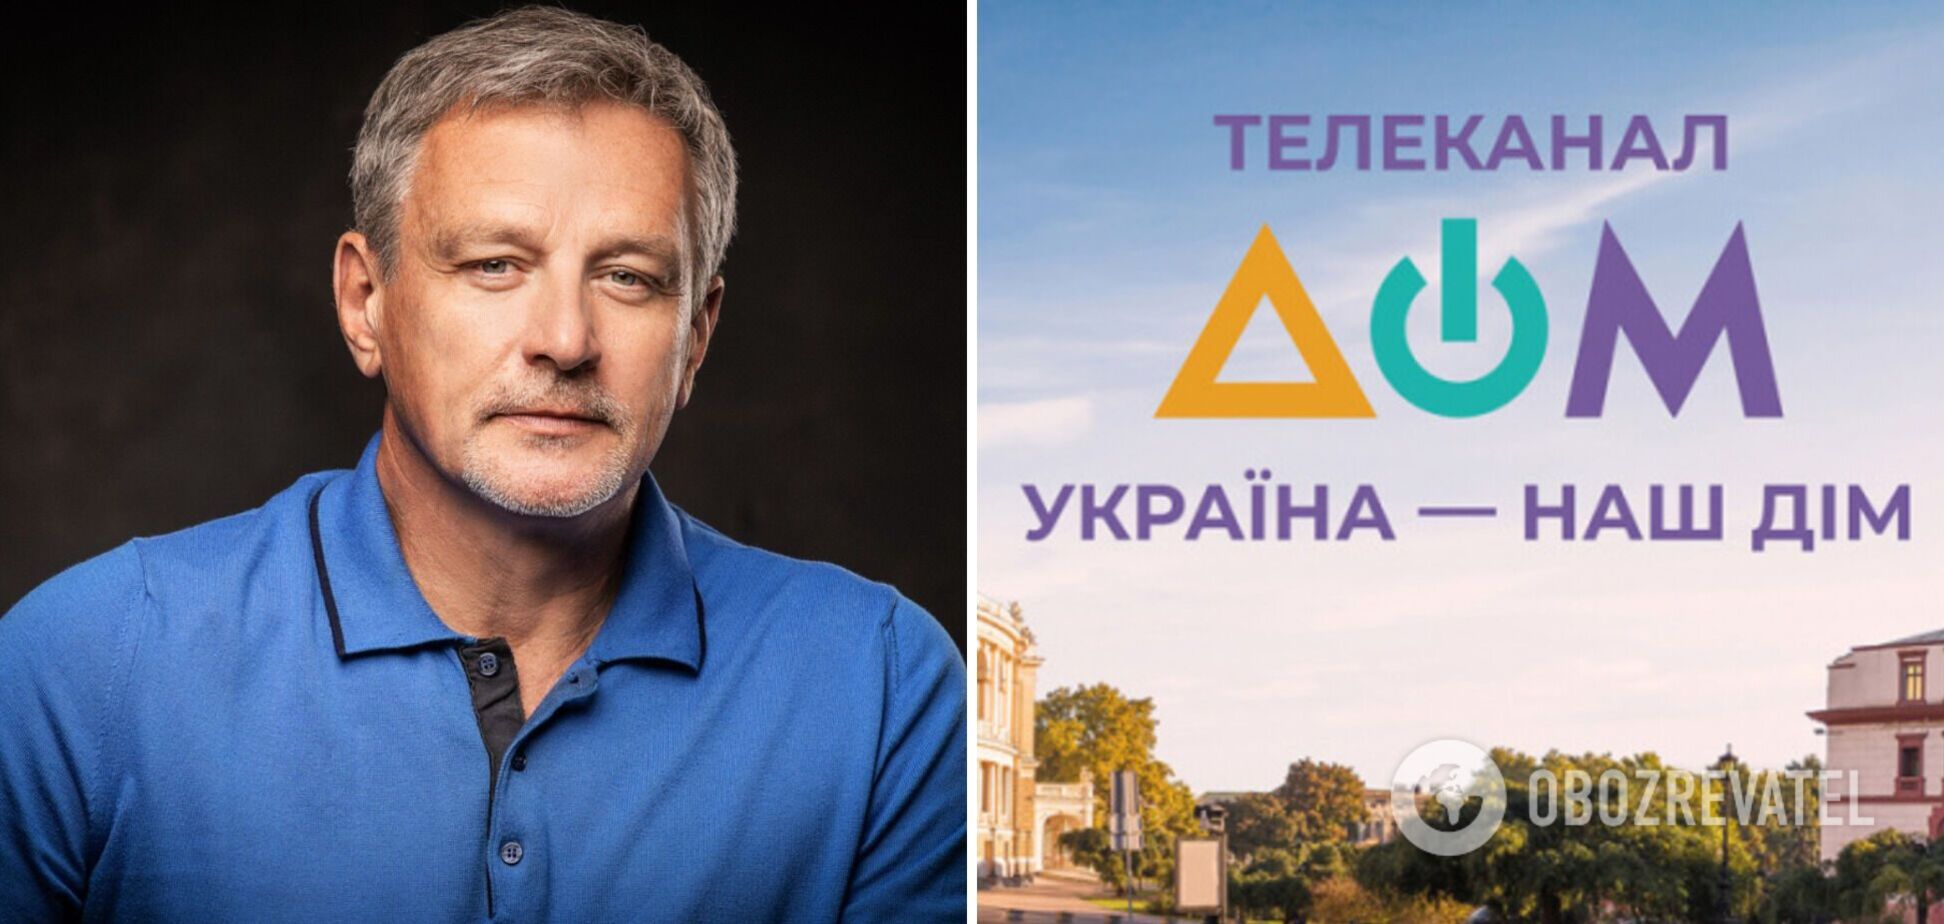 Телеканал 'Дом' заказал шоу с Пальчевским за 12 млн грн: его будет снимать владелец 'Зе медиа'